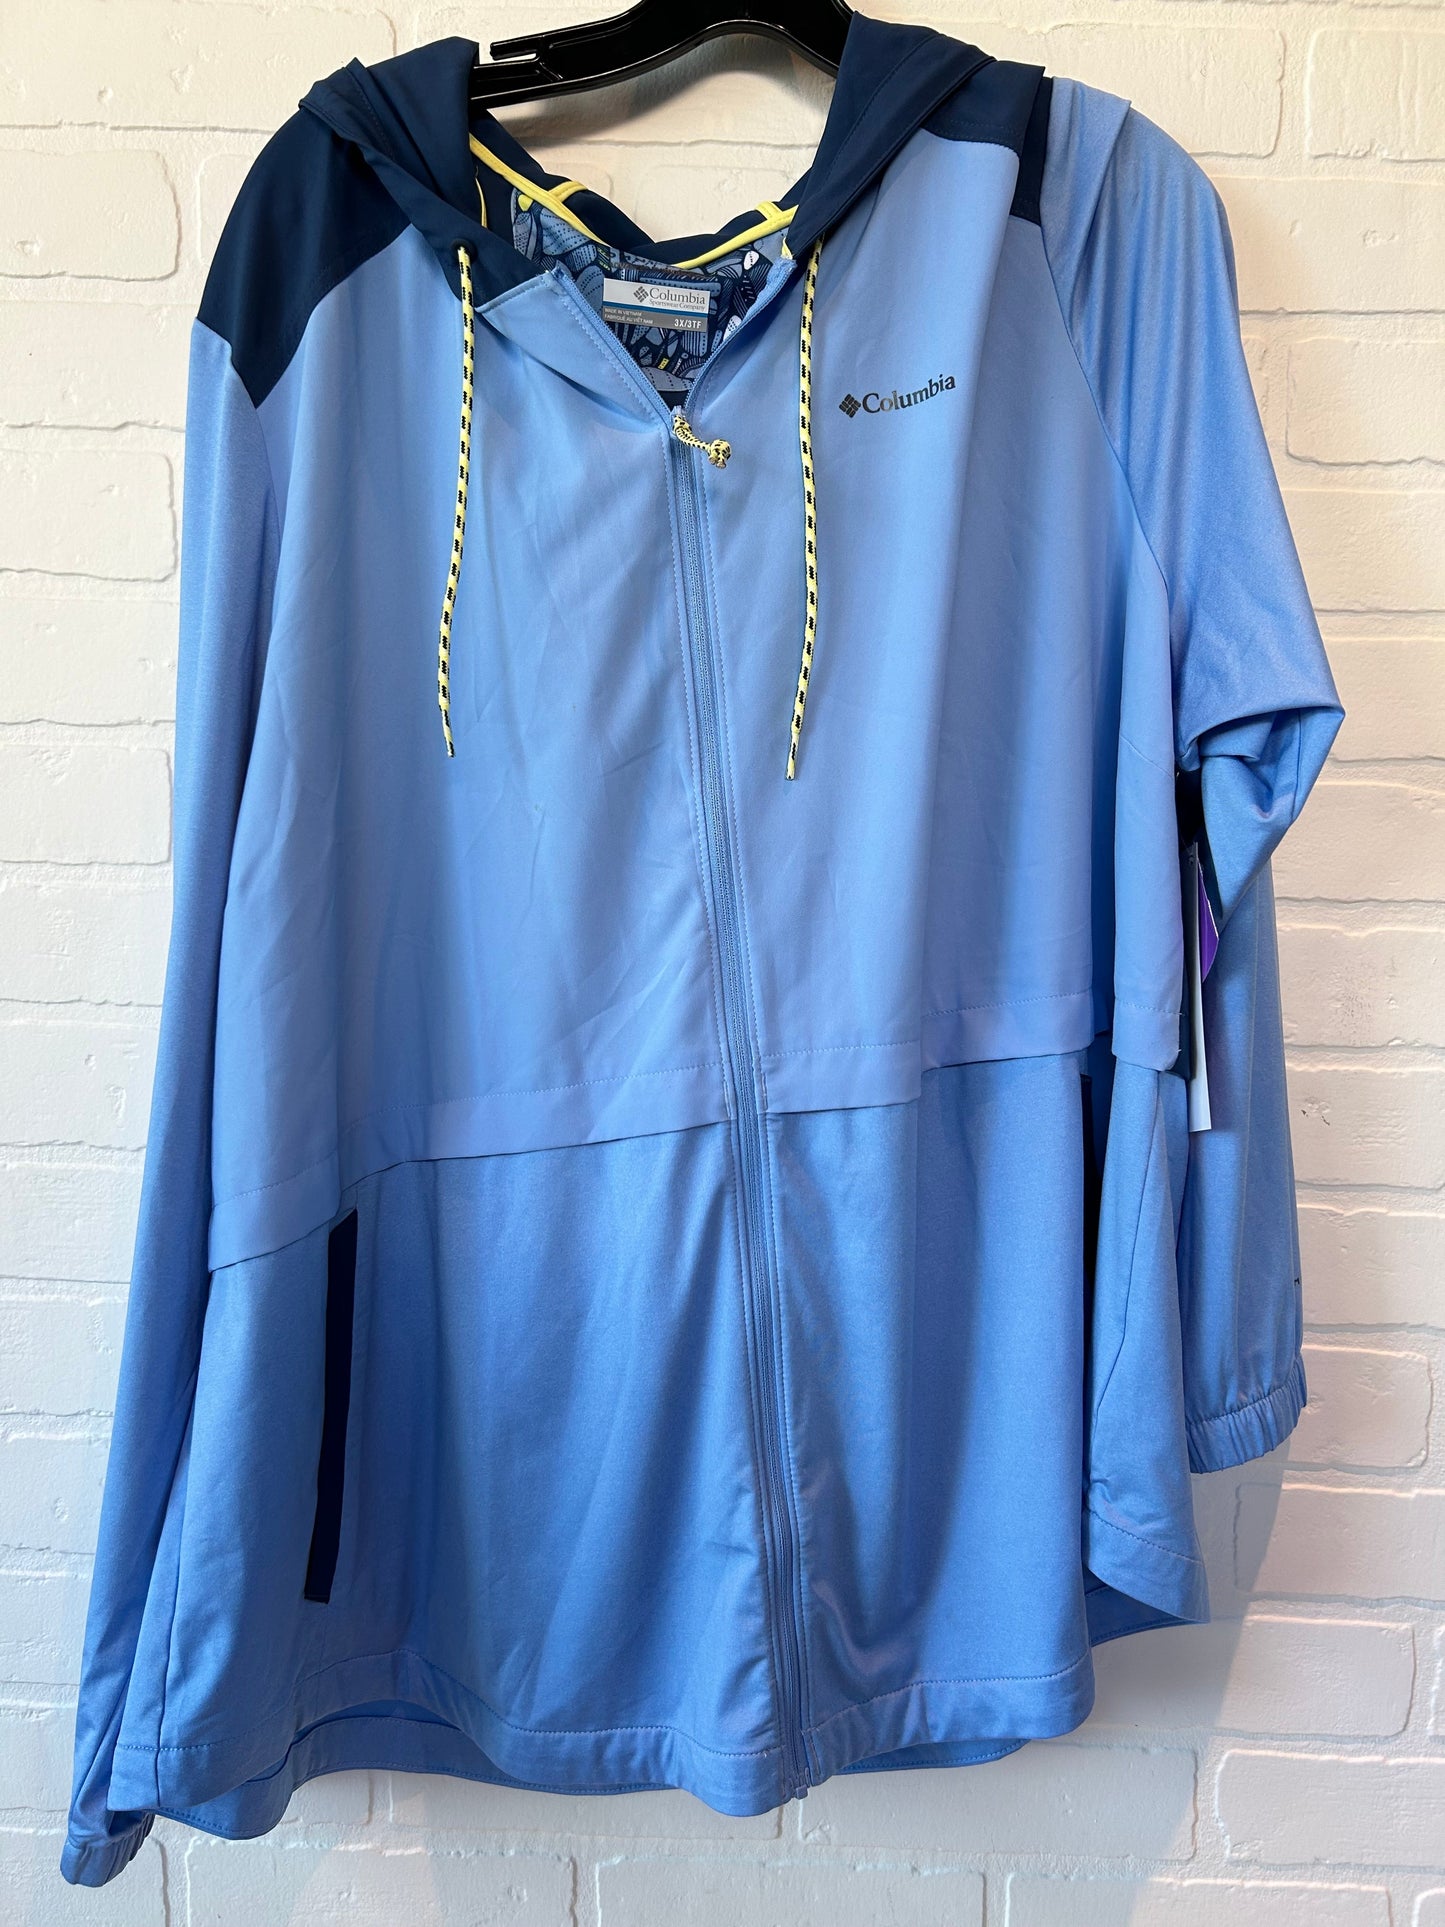 Blue Athletic Jacket Columbia, Size 3x